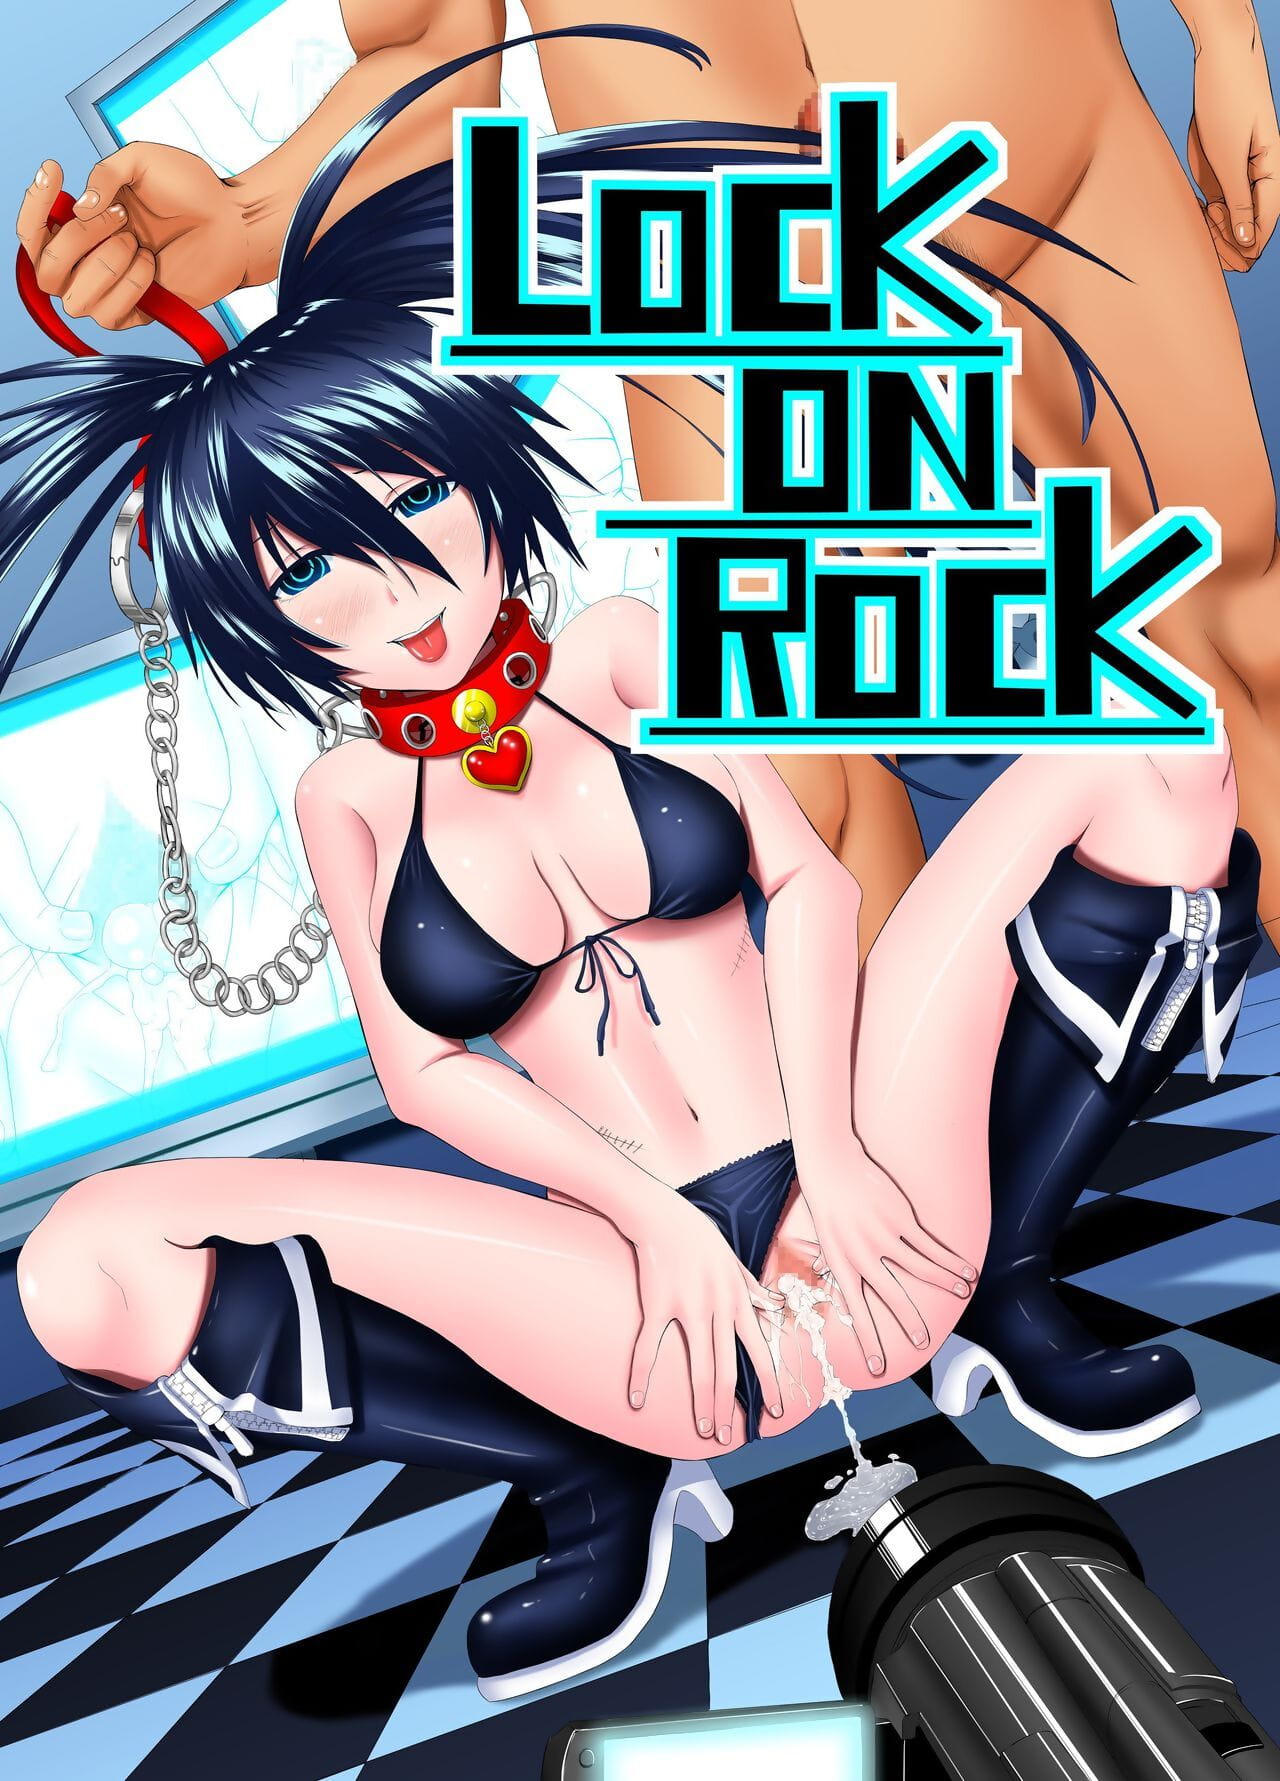 x pierrot Slot op rock black★rock schutter